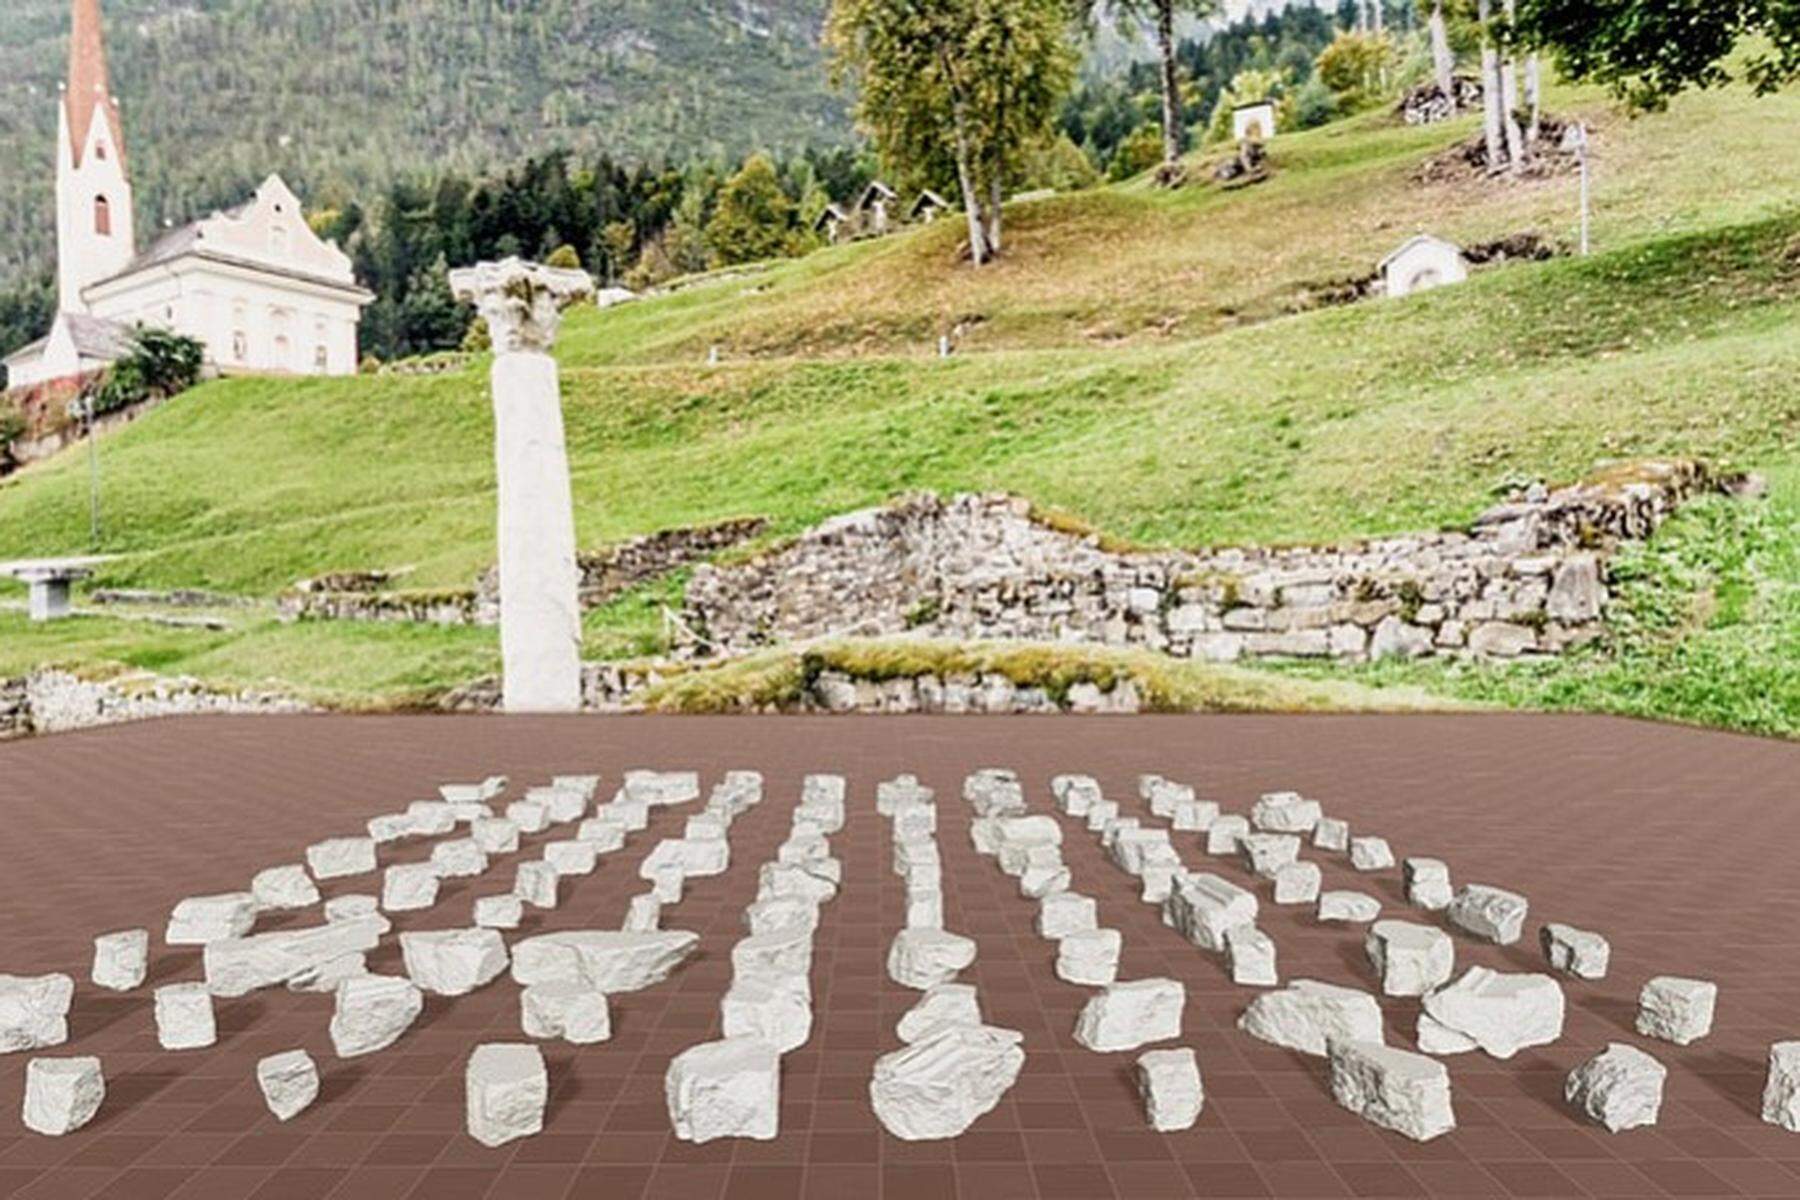 Knifflig: Grazer Unis entwickelten Online-Puzzlespiel von antiker Altarplatte 